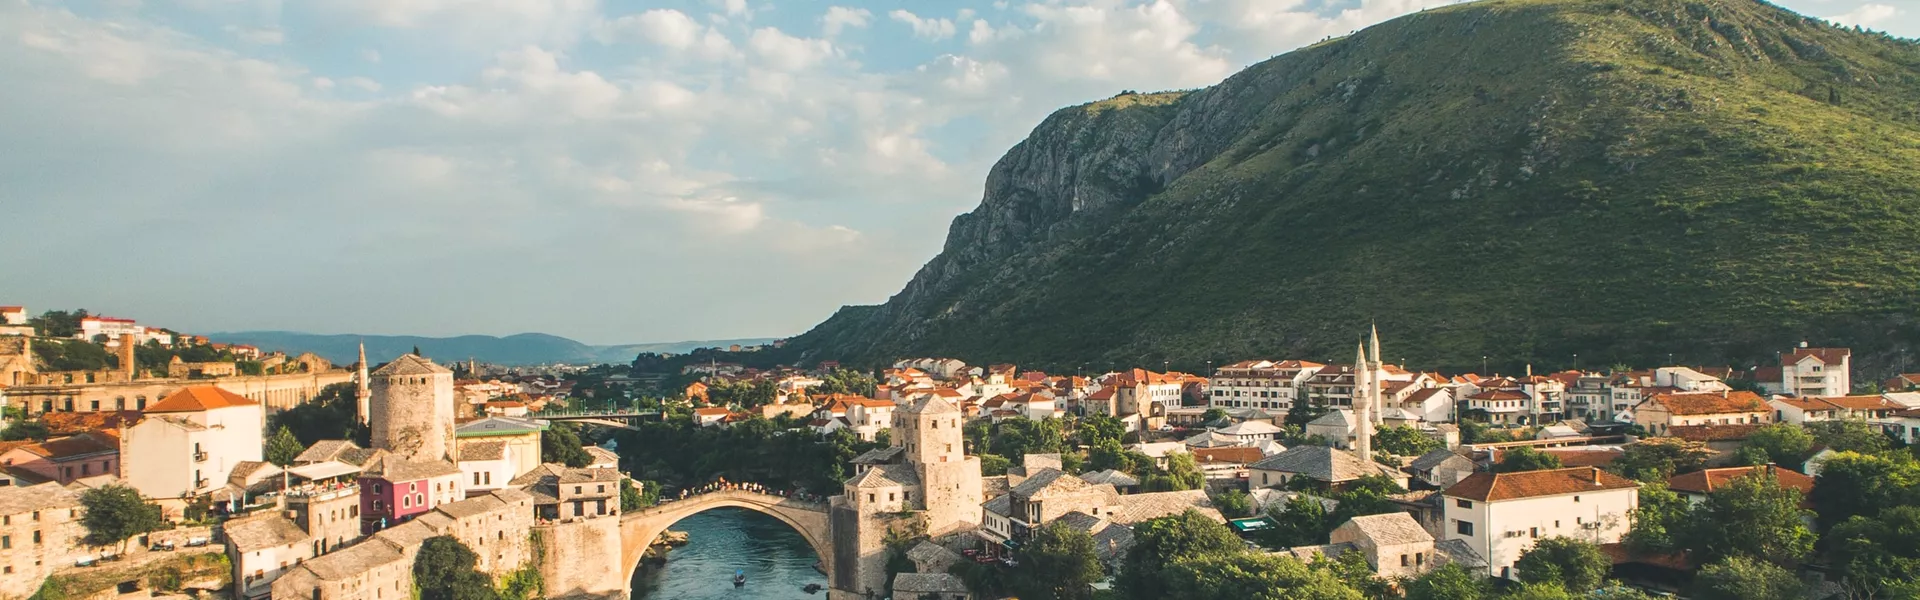 Bosnia Herzegovina Mostar Bridge